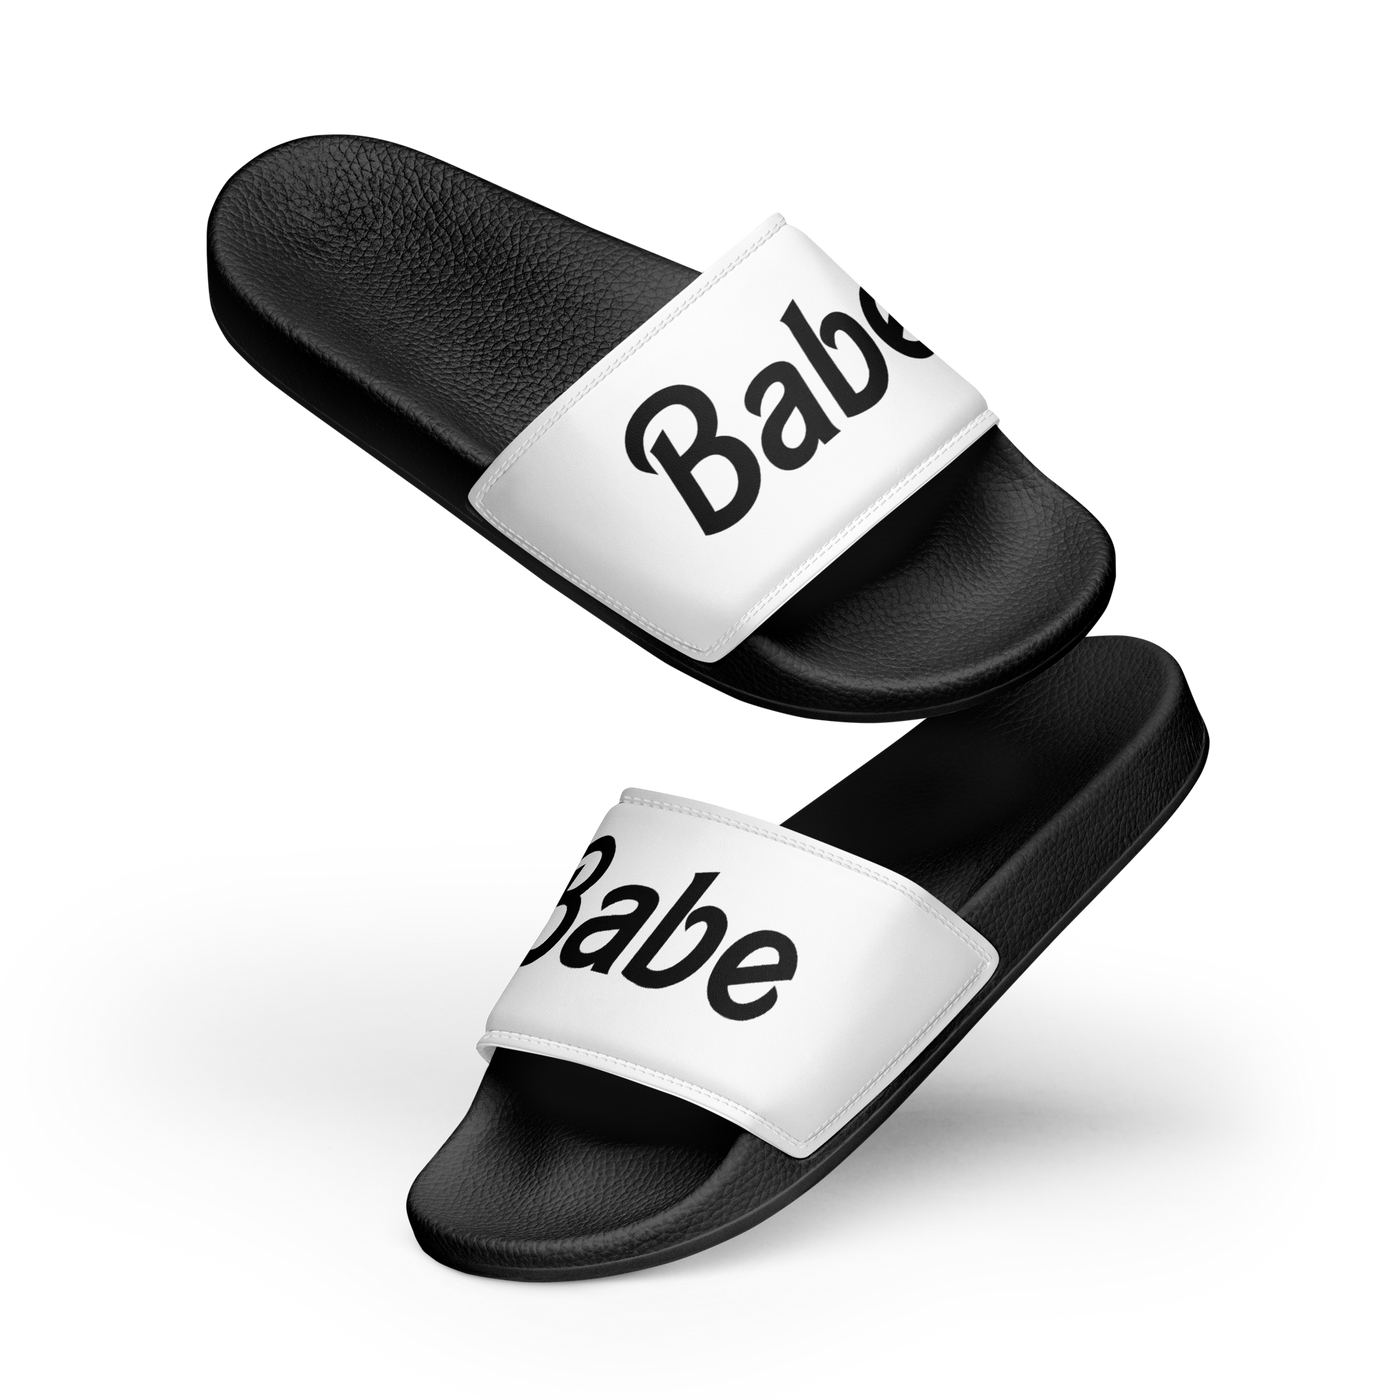 'Babe' Women's Slides